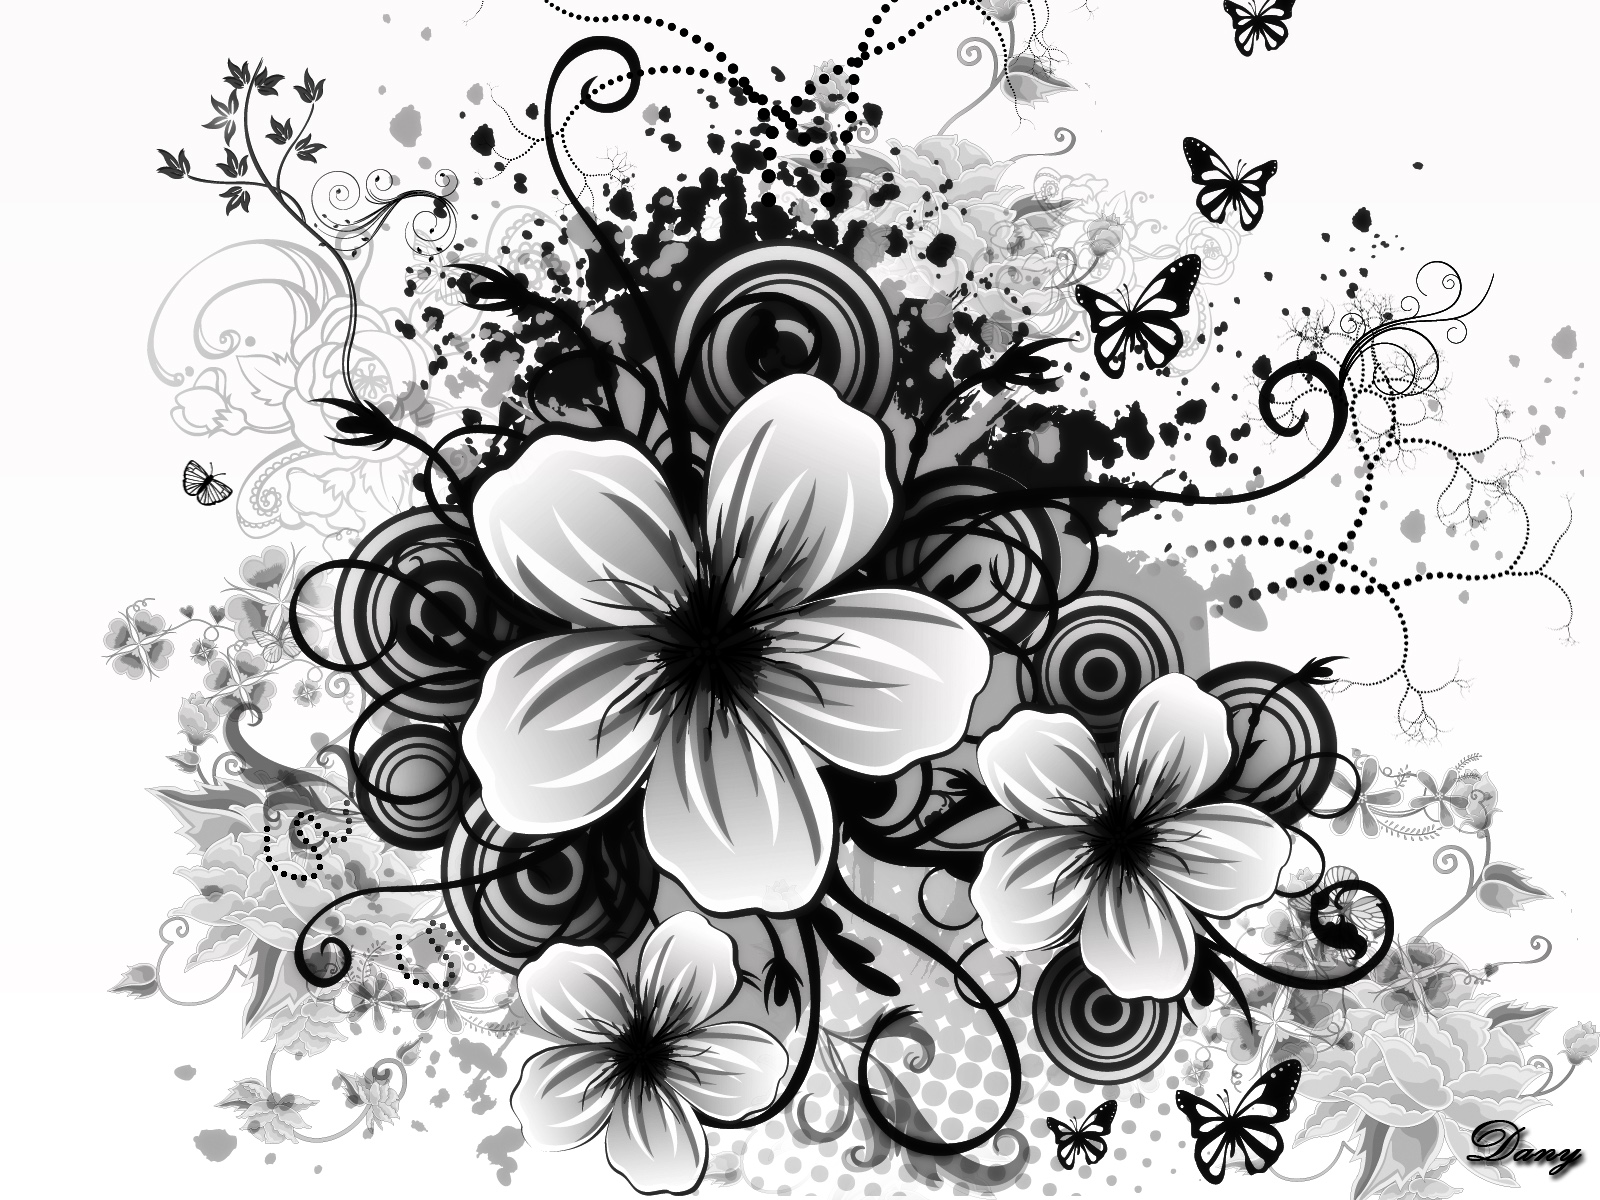 검은 색과 흰색 꽃 벽지,검정색과 흰색,흑백 사진,꽃,꽃잎,식물